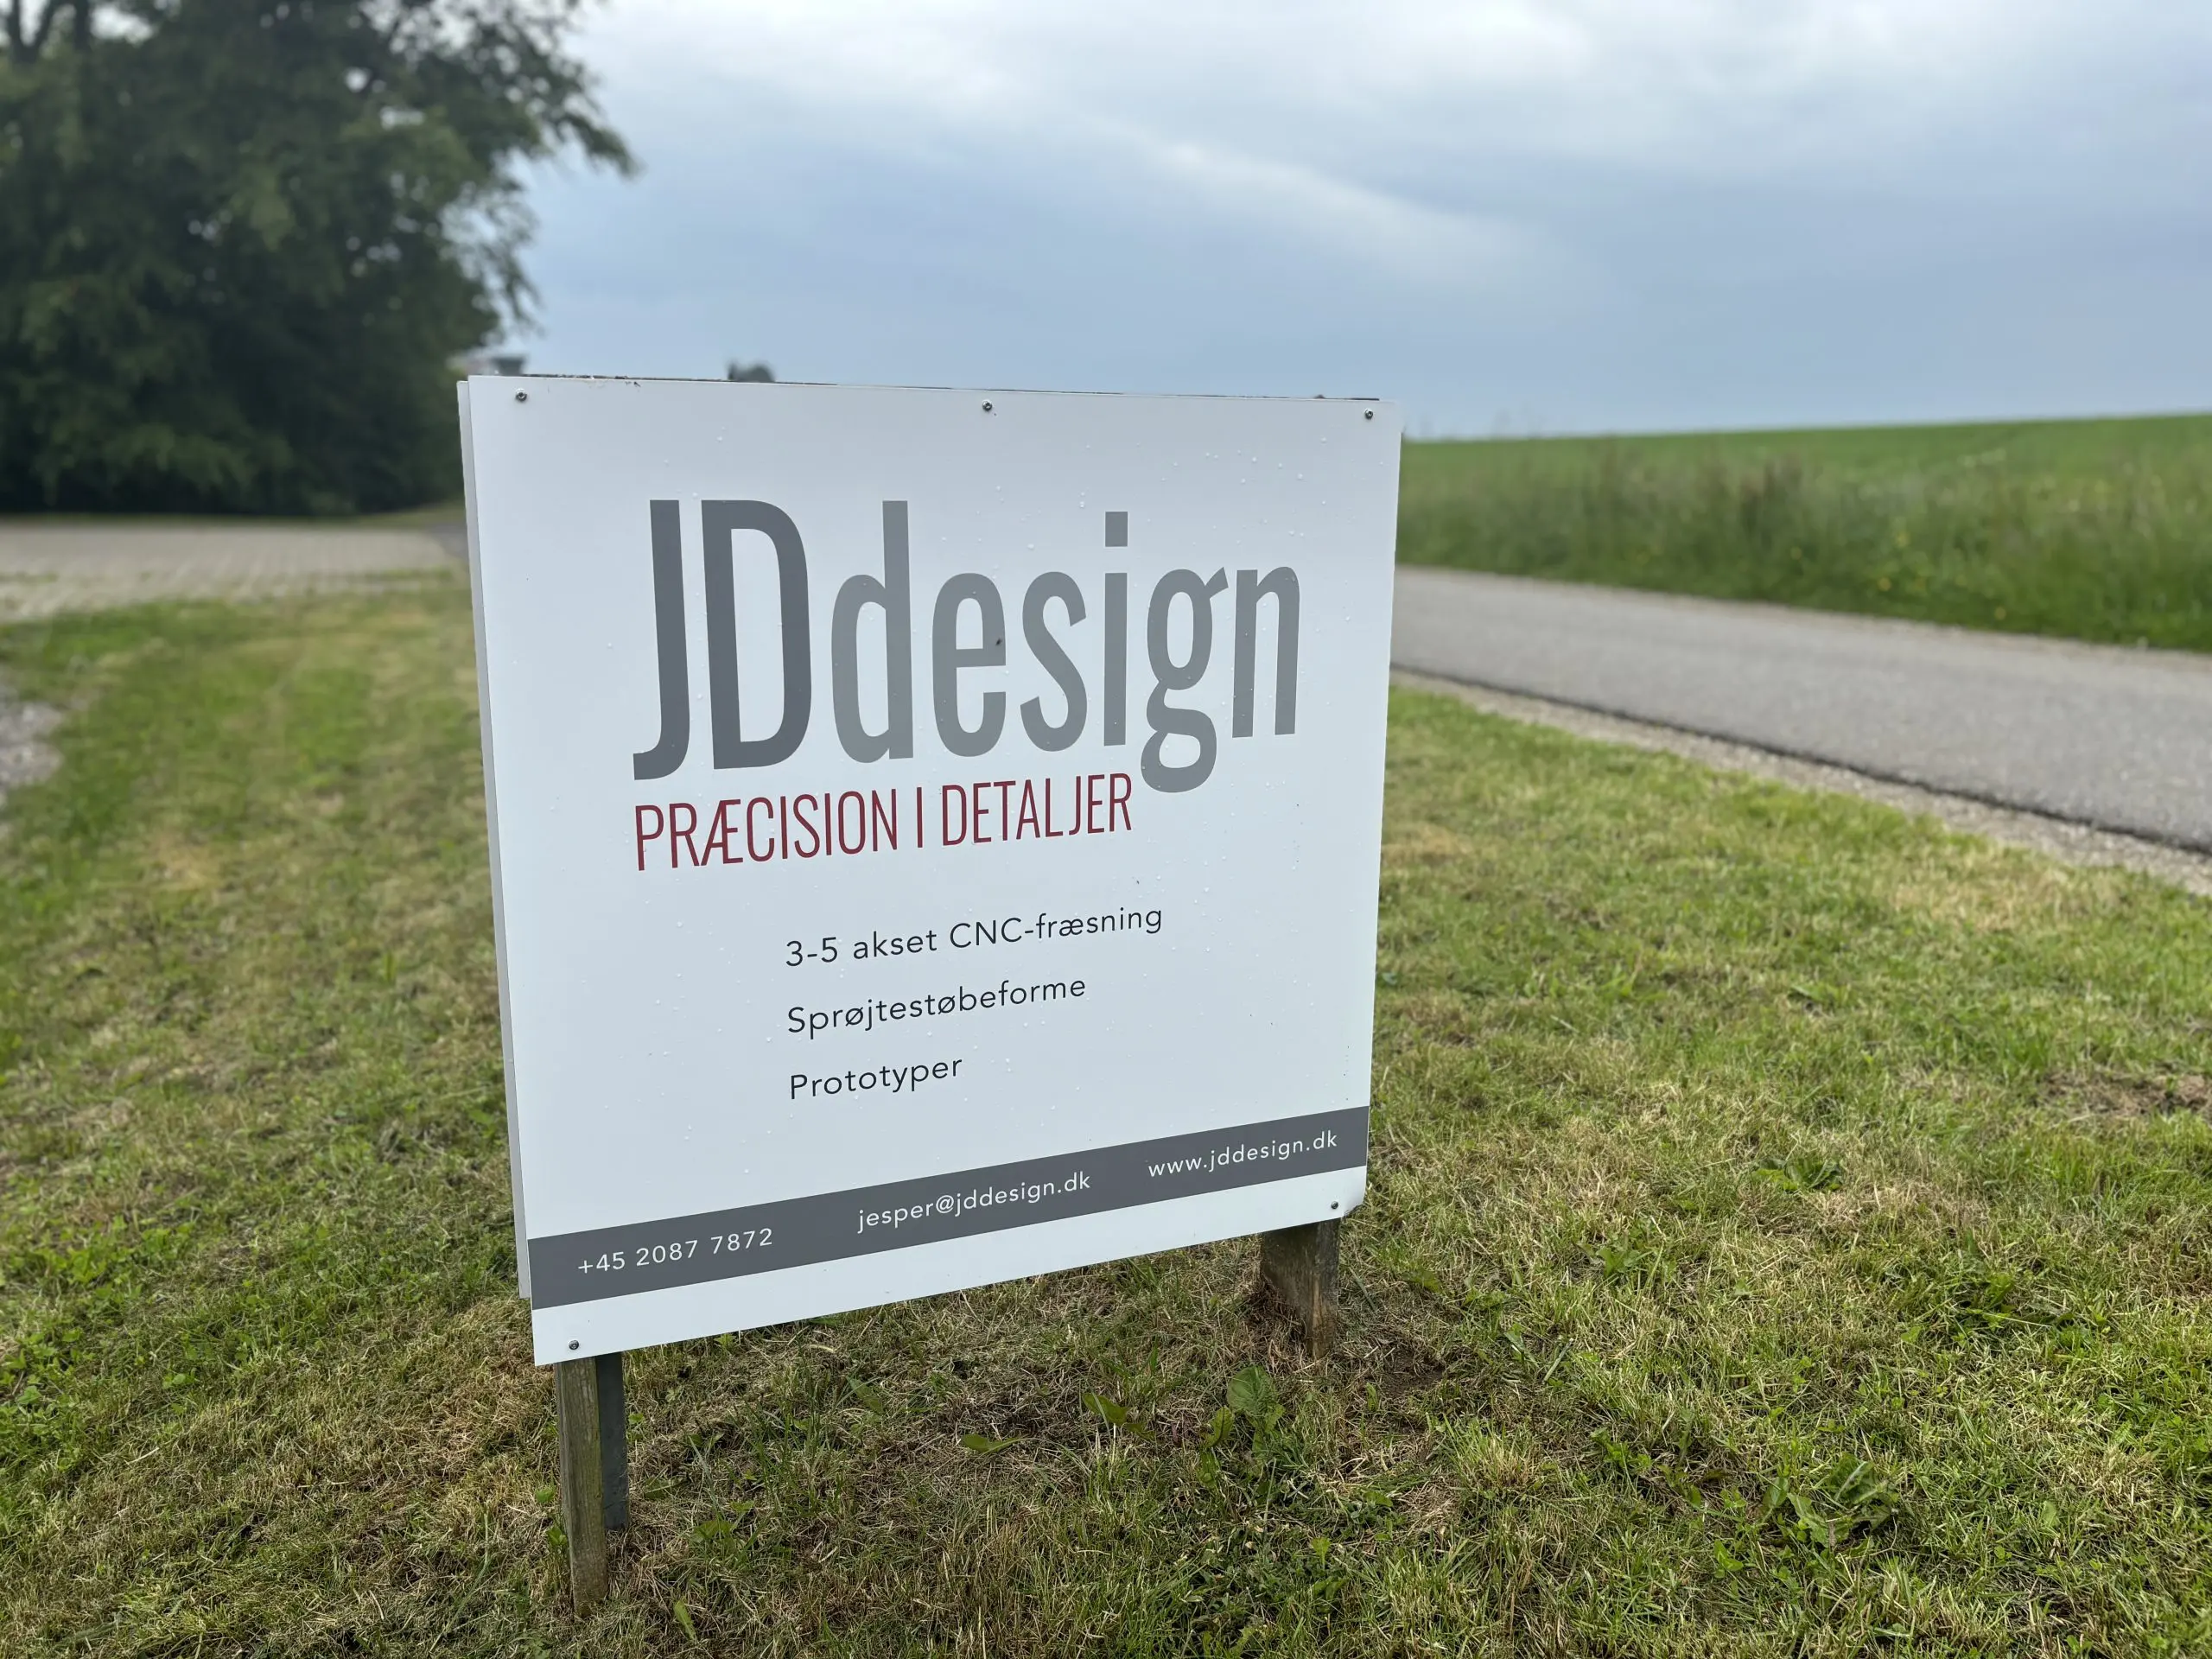 JDdesign producerer lokalt. Med præcision i detaljer.